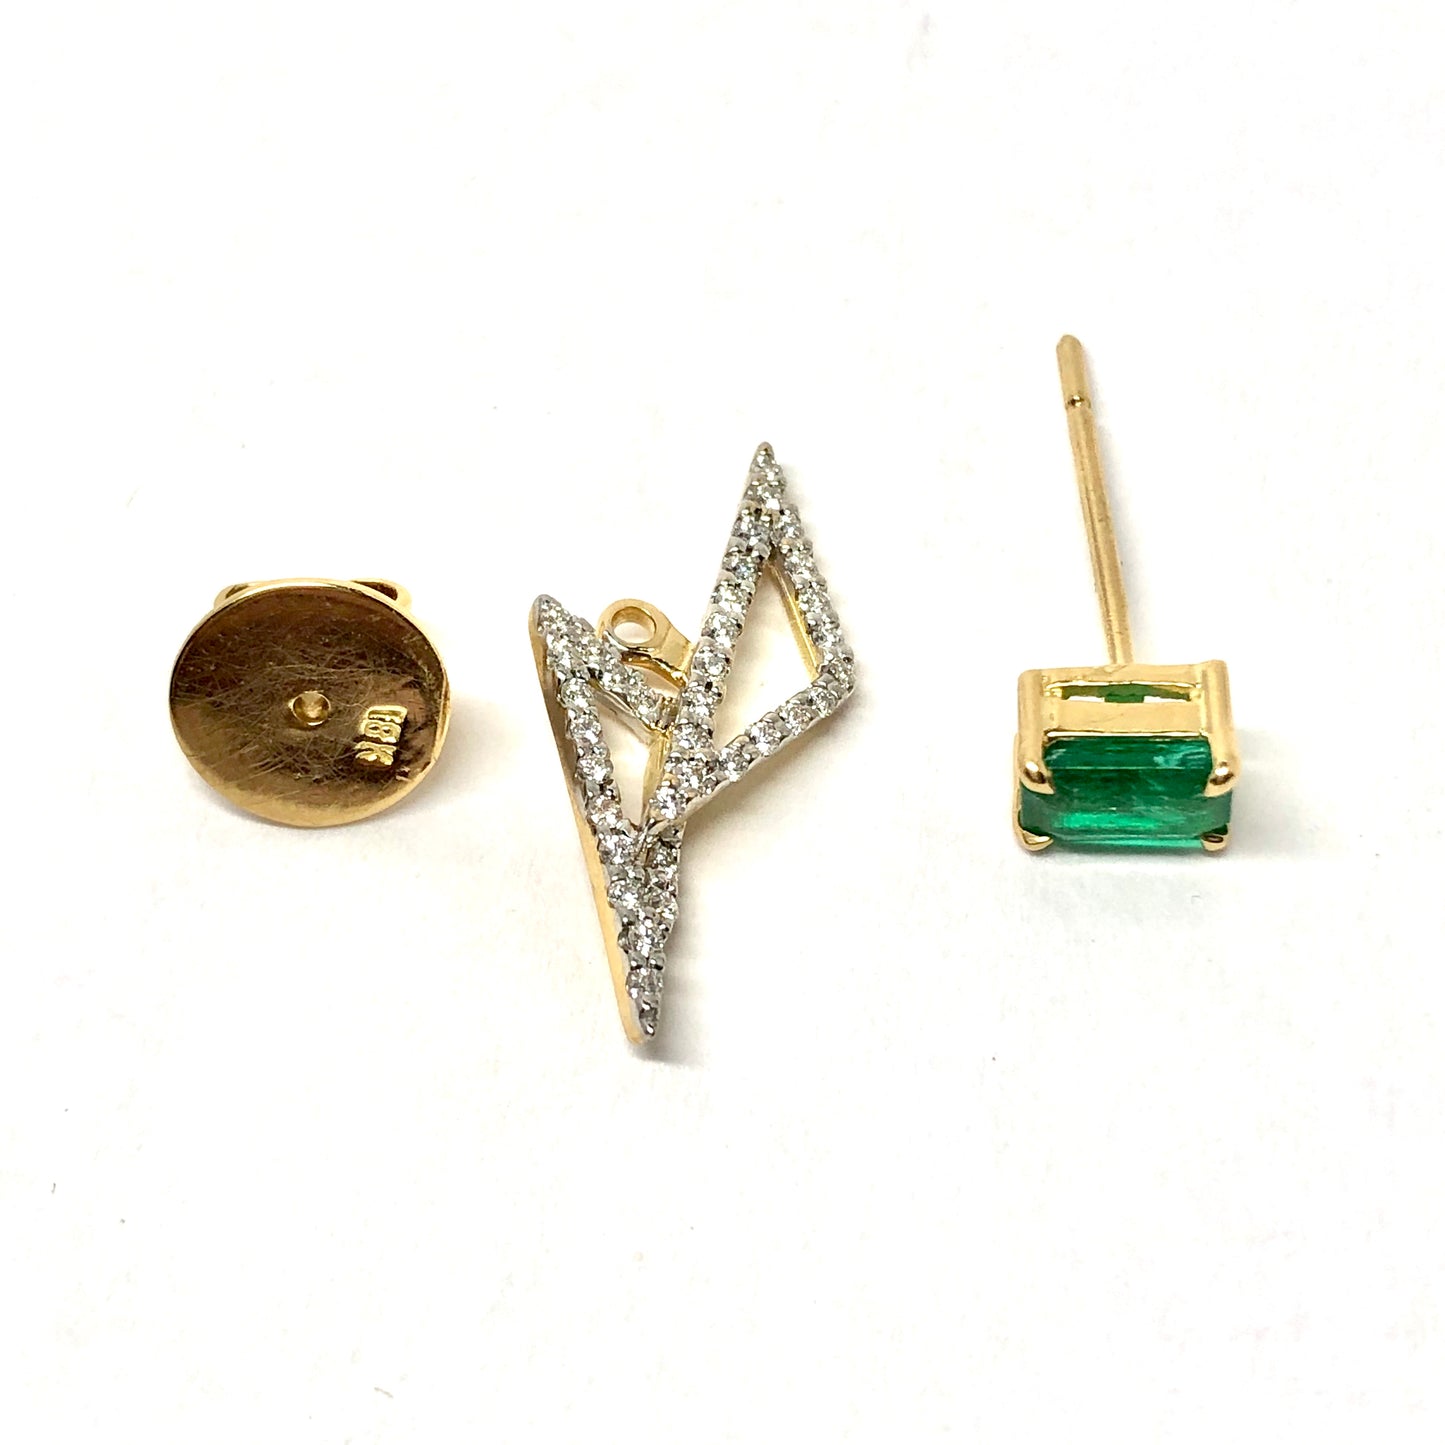 KAVANT & SHARART 18K Yellow Gold Designer Earrings w/ Genuine Emeralds and Diamonds 4.92g